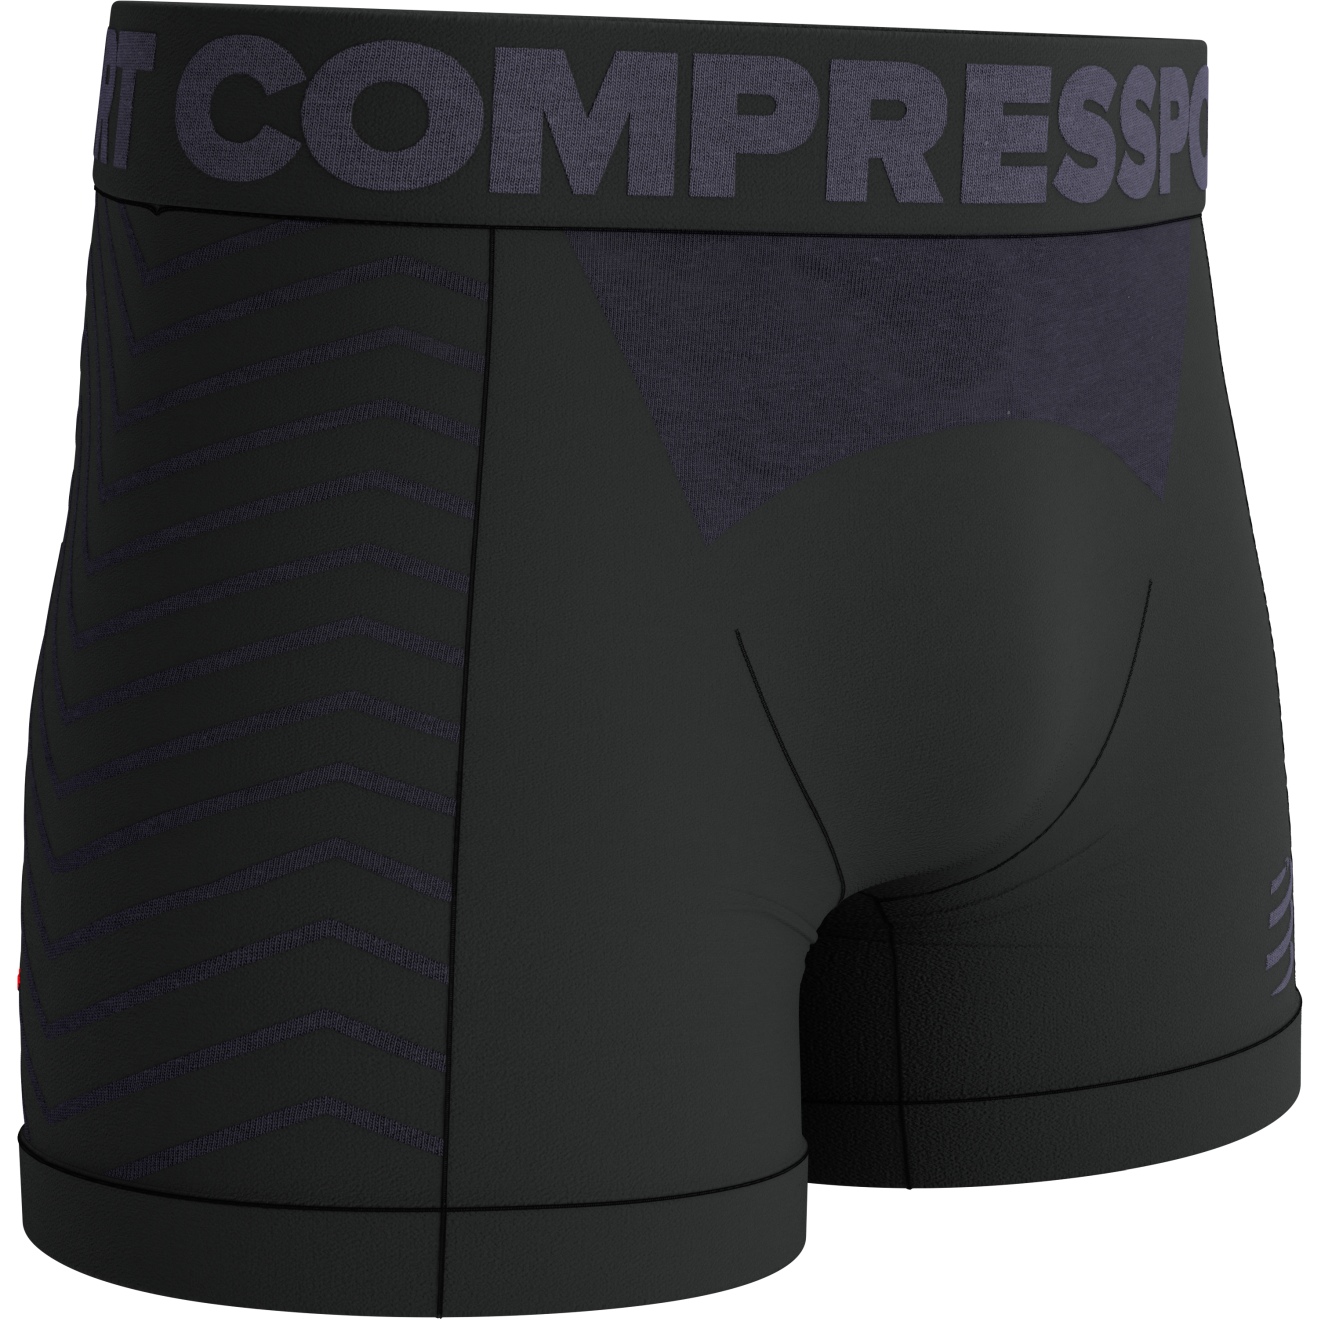 Produktbild von Compressport Seamless Boxershorts - schwarz/grau